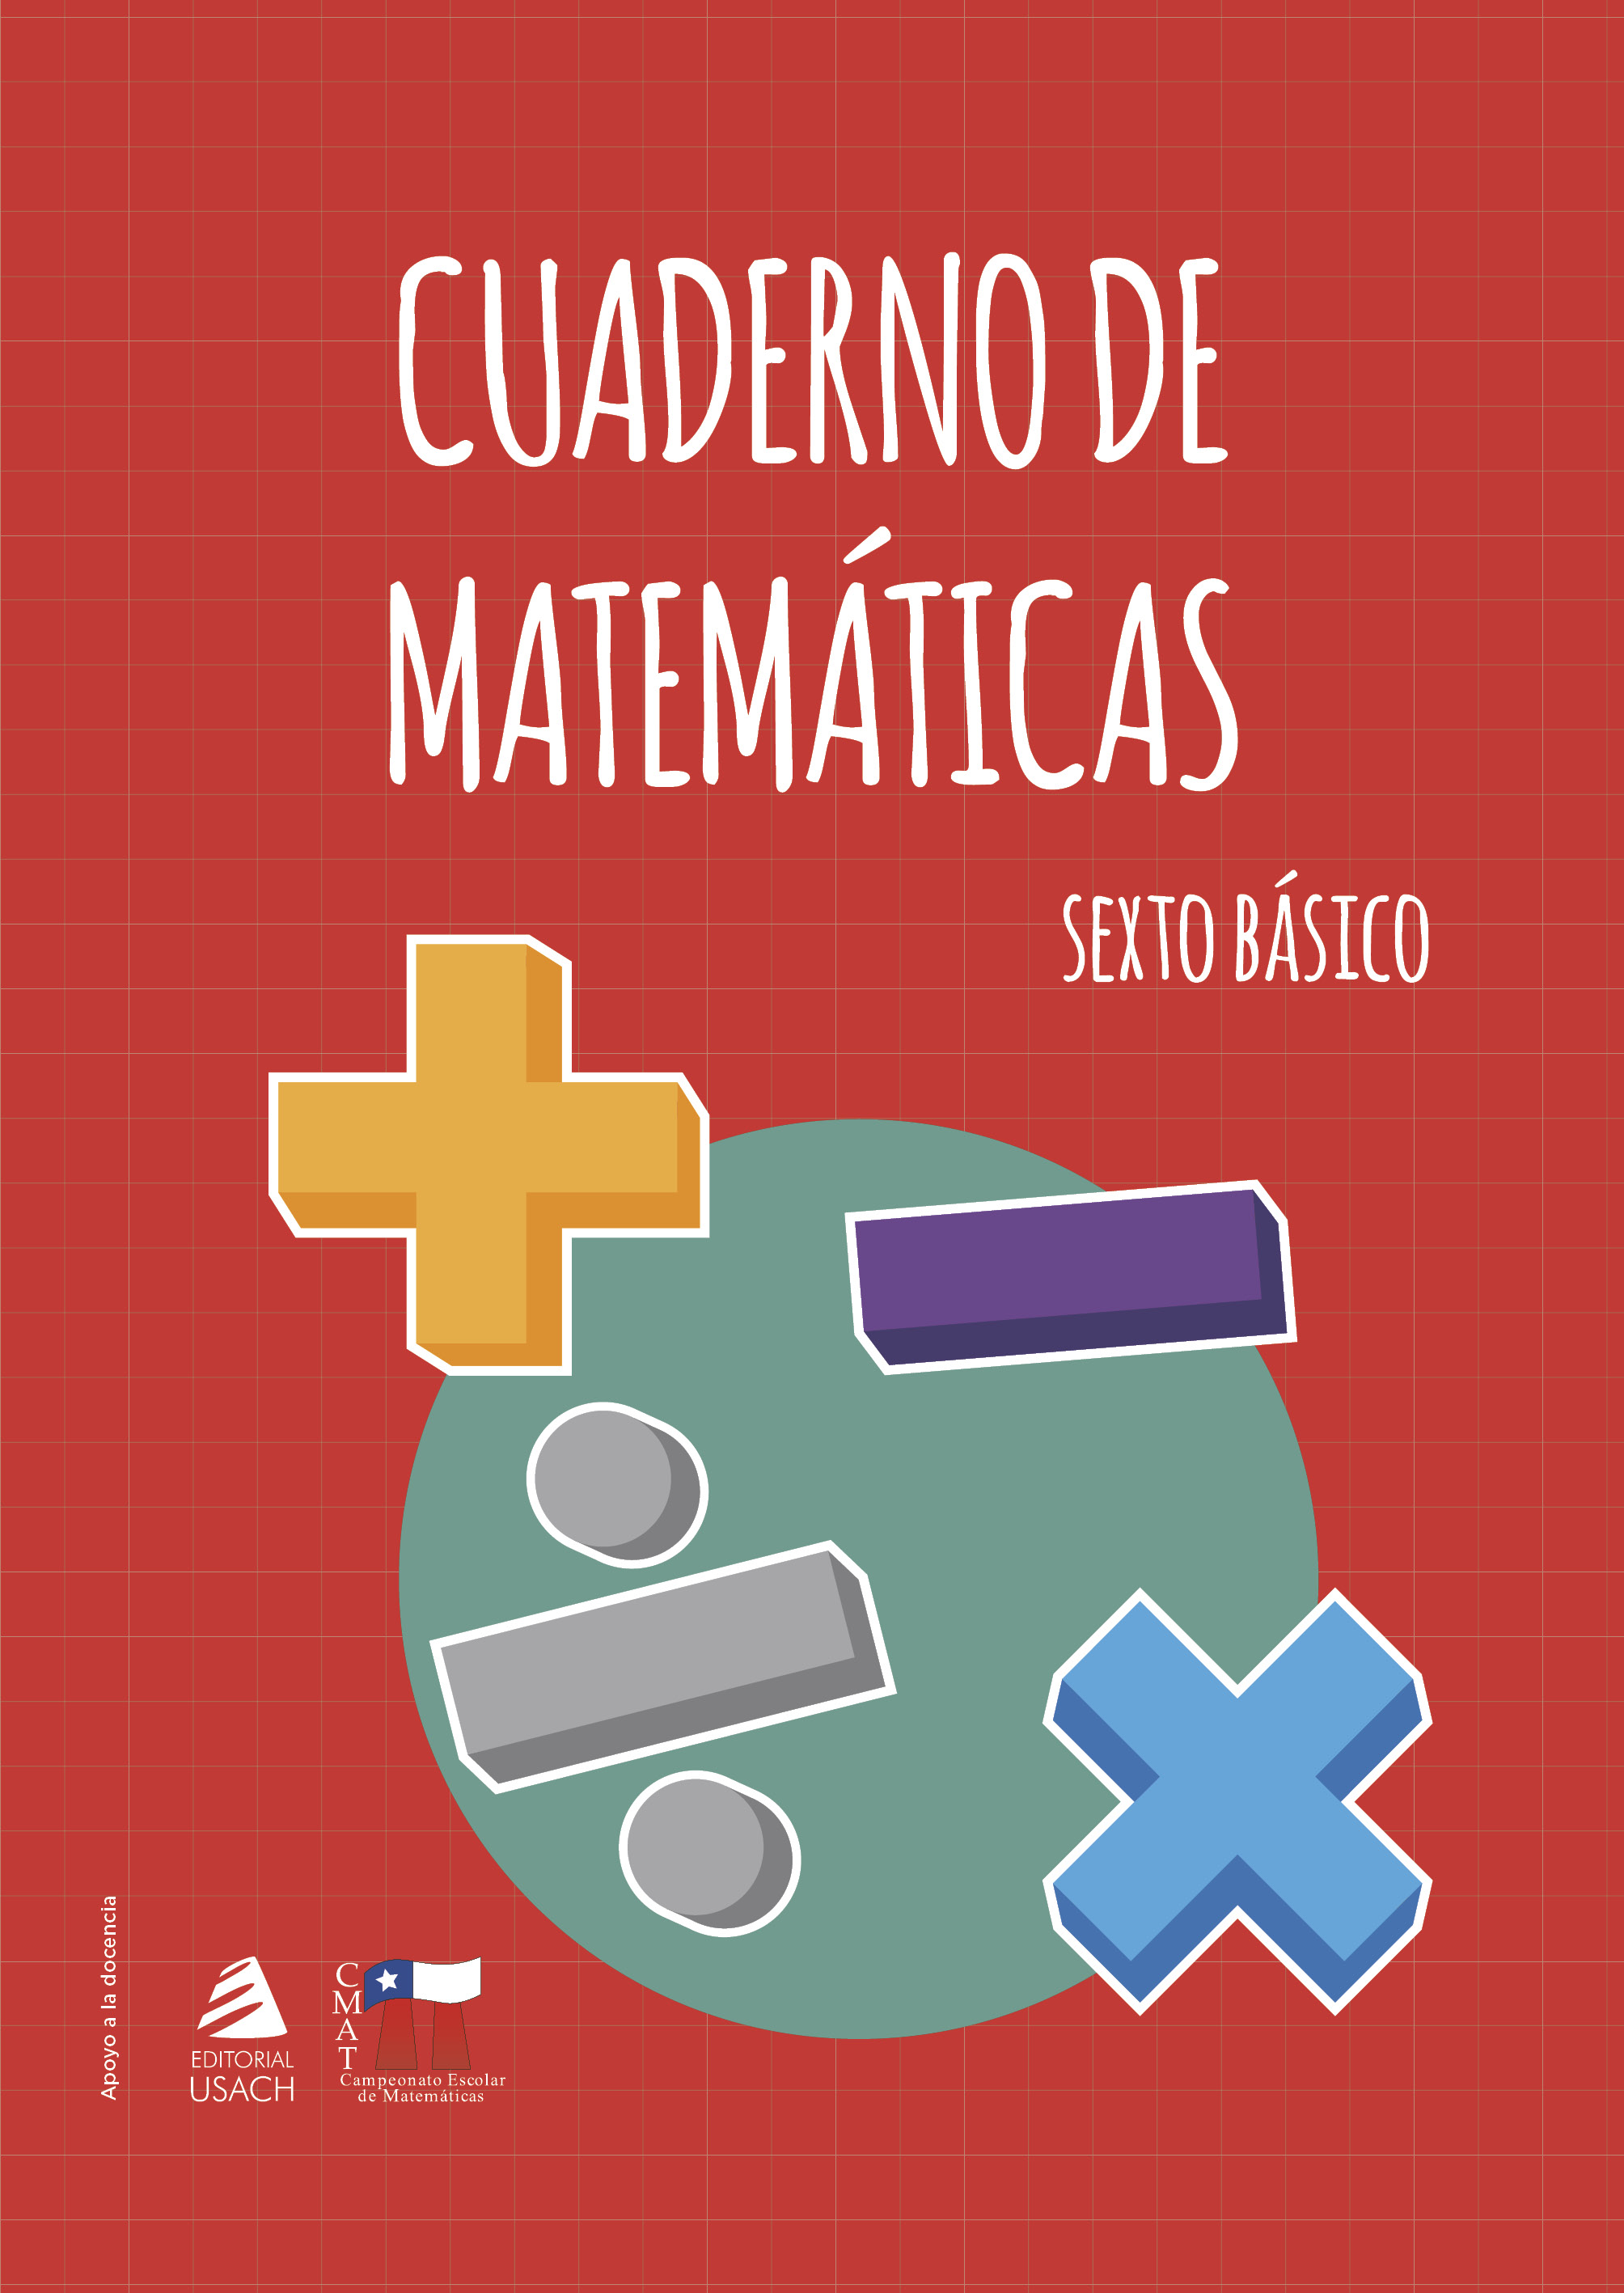 CMAT: cuaderno de matemáticas 6to básico